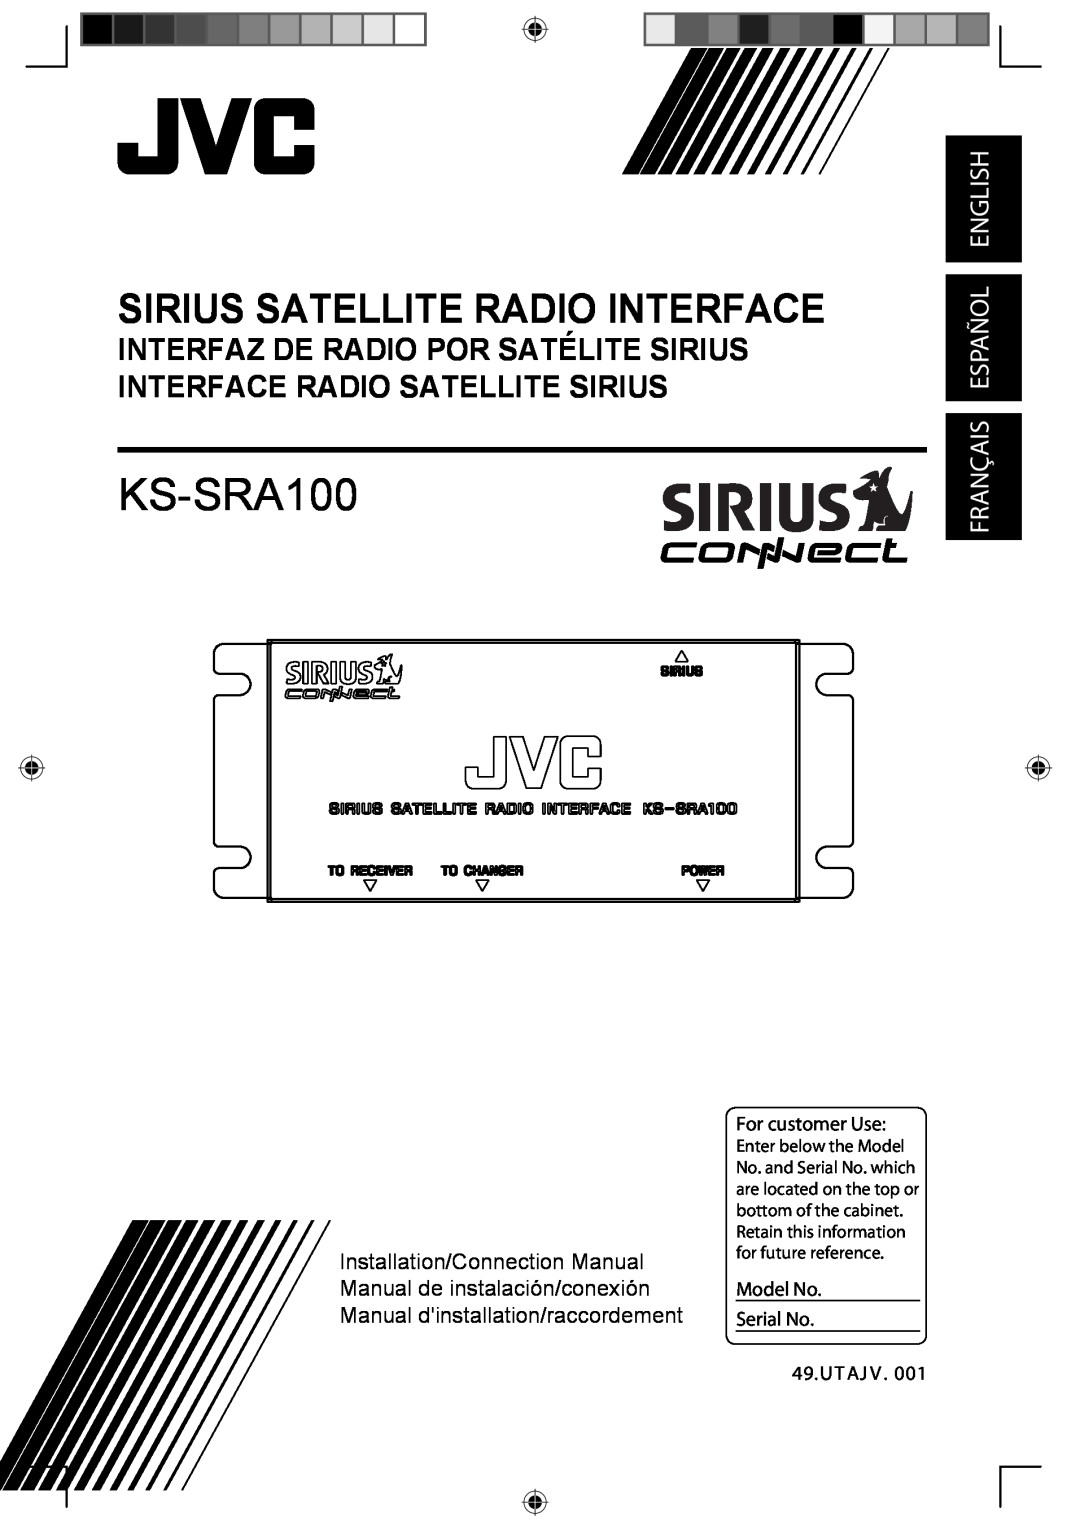 Sirius Satellite Radio KS-SRA100 manual Sirius Satellite Radio Interface, Français Español English 